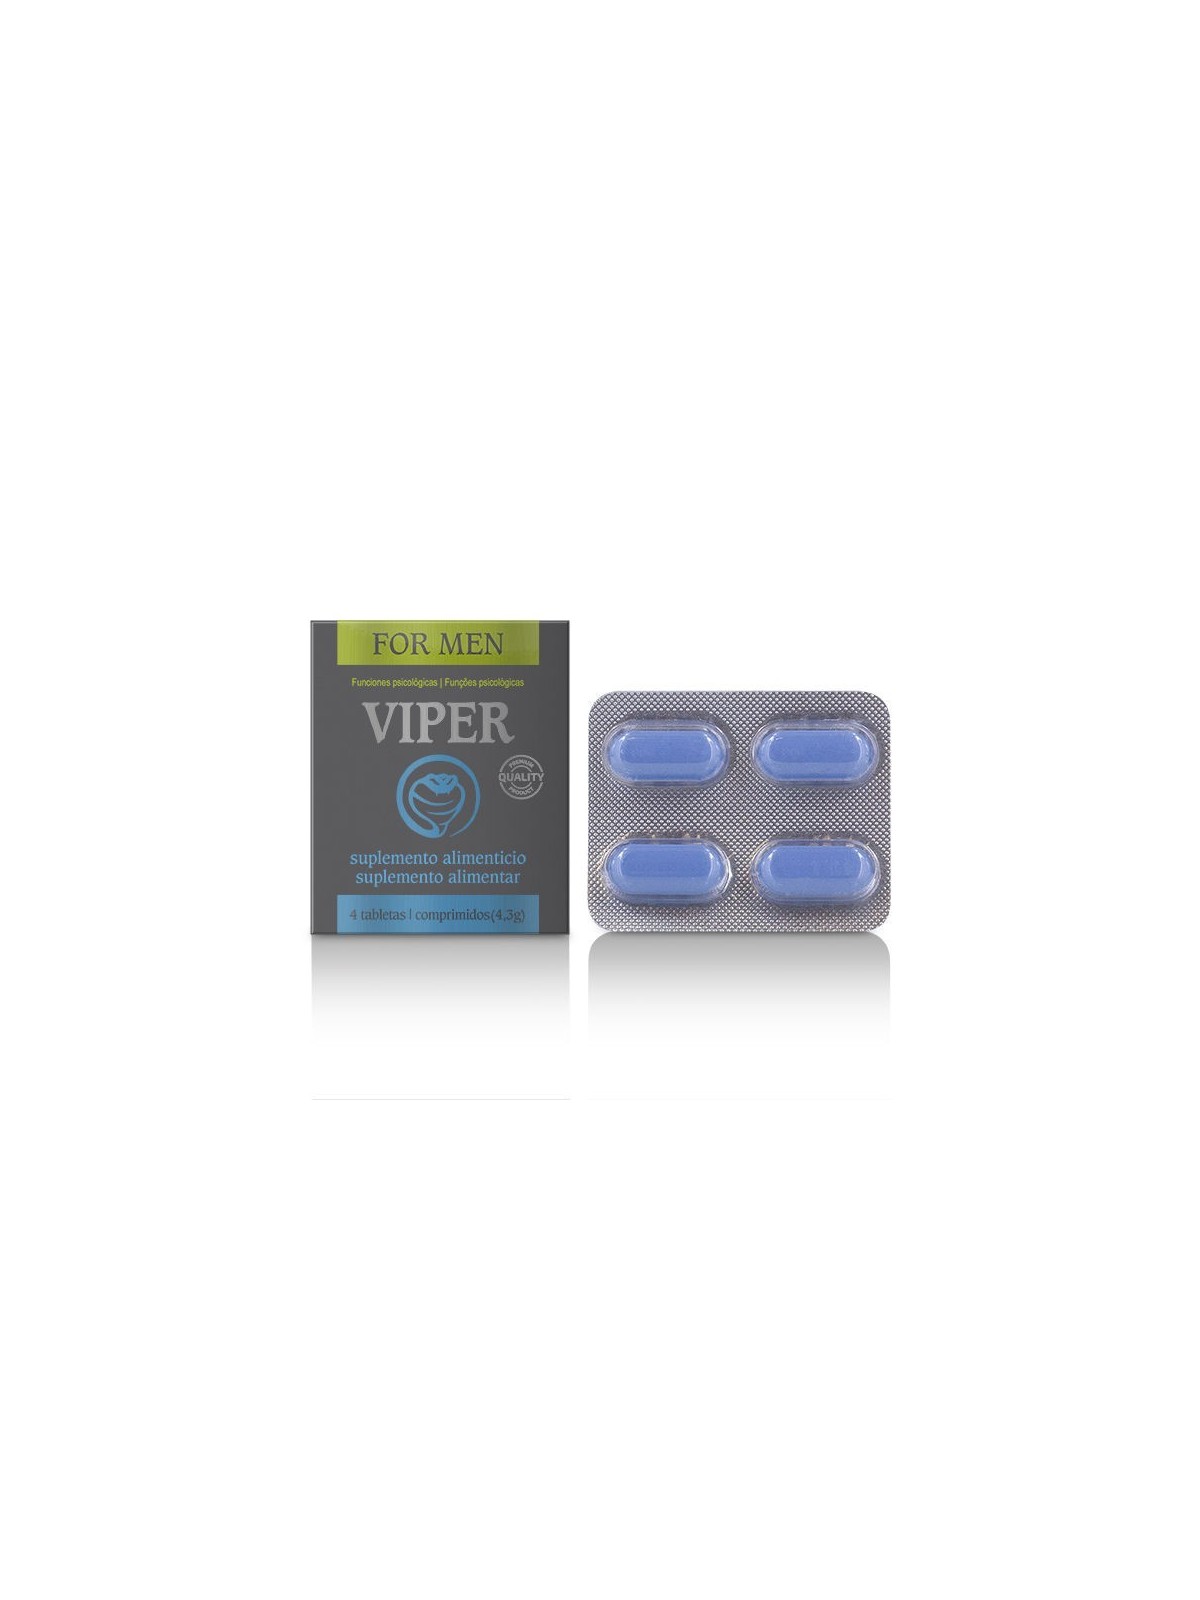 Viper Potenciador Masculino Cápsulas - Comprar Potenciador erección Cobeco - Potenciadores de erección (1)